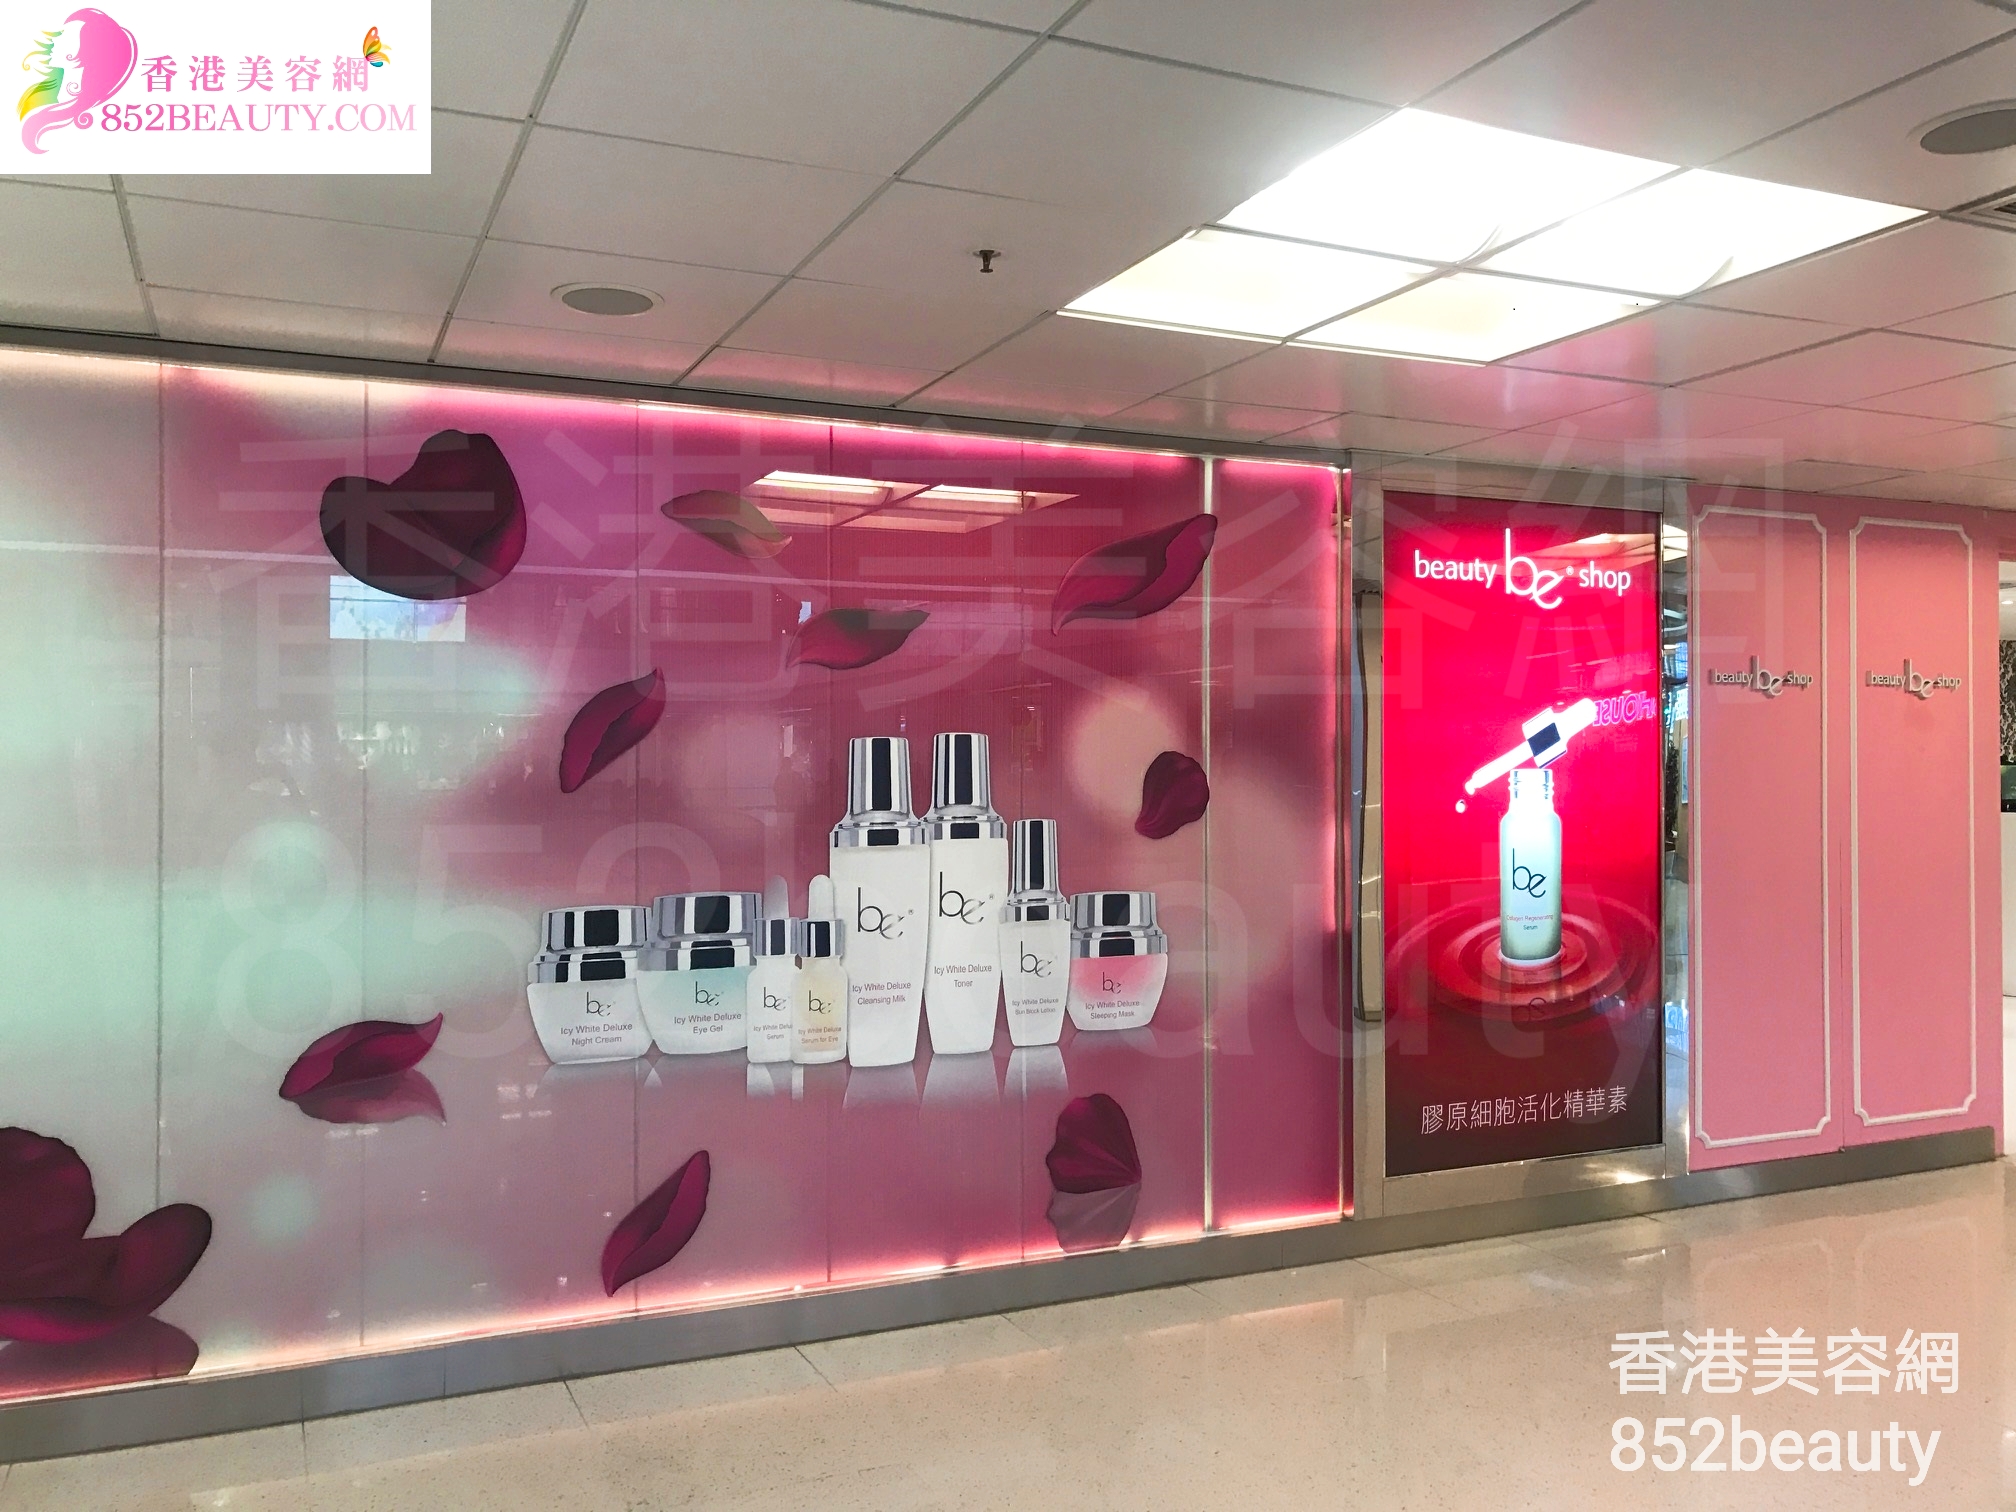 香港美容網 Hong Kong Beauty Salon 美容院 / 美容師: be beauty shop (大埔廣場)